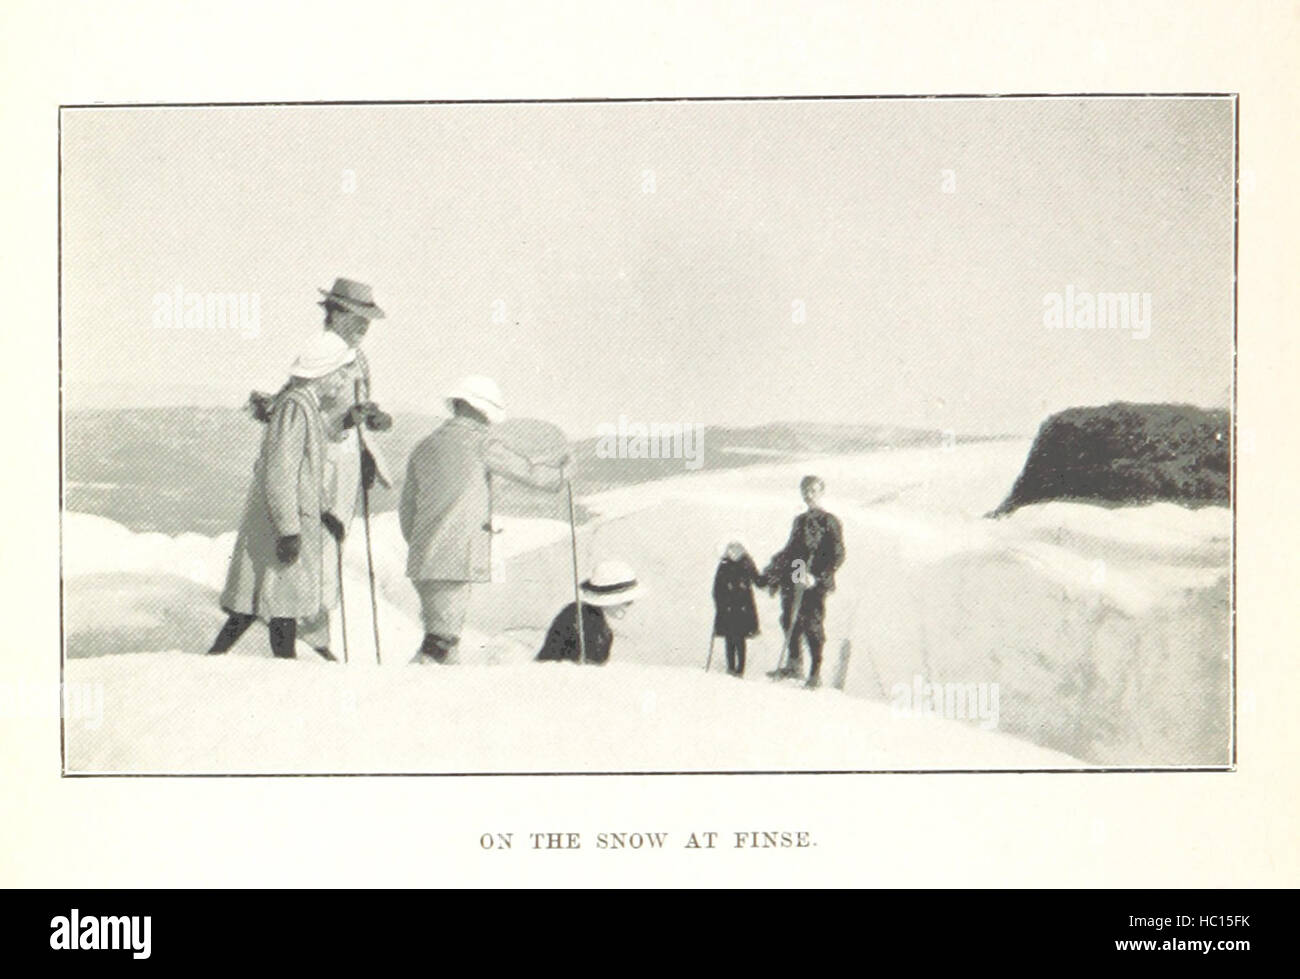 Immagine presa da pagina 82 "Anno libro ... 1896, [ecc]' immagine presa da pagina 82 del 'Year Book 1896, Foto Stock